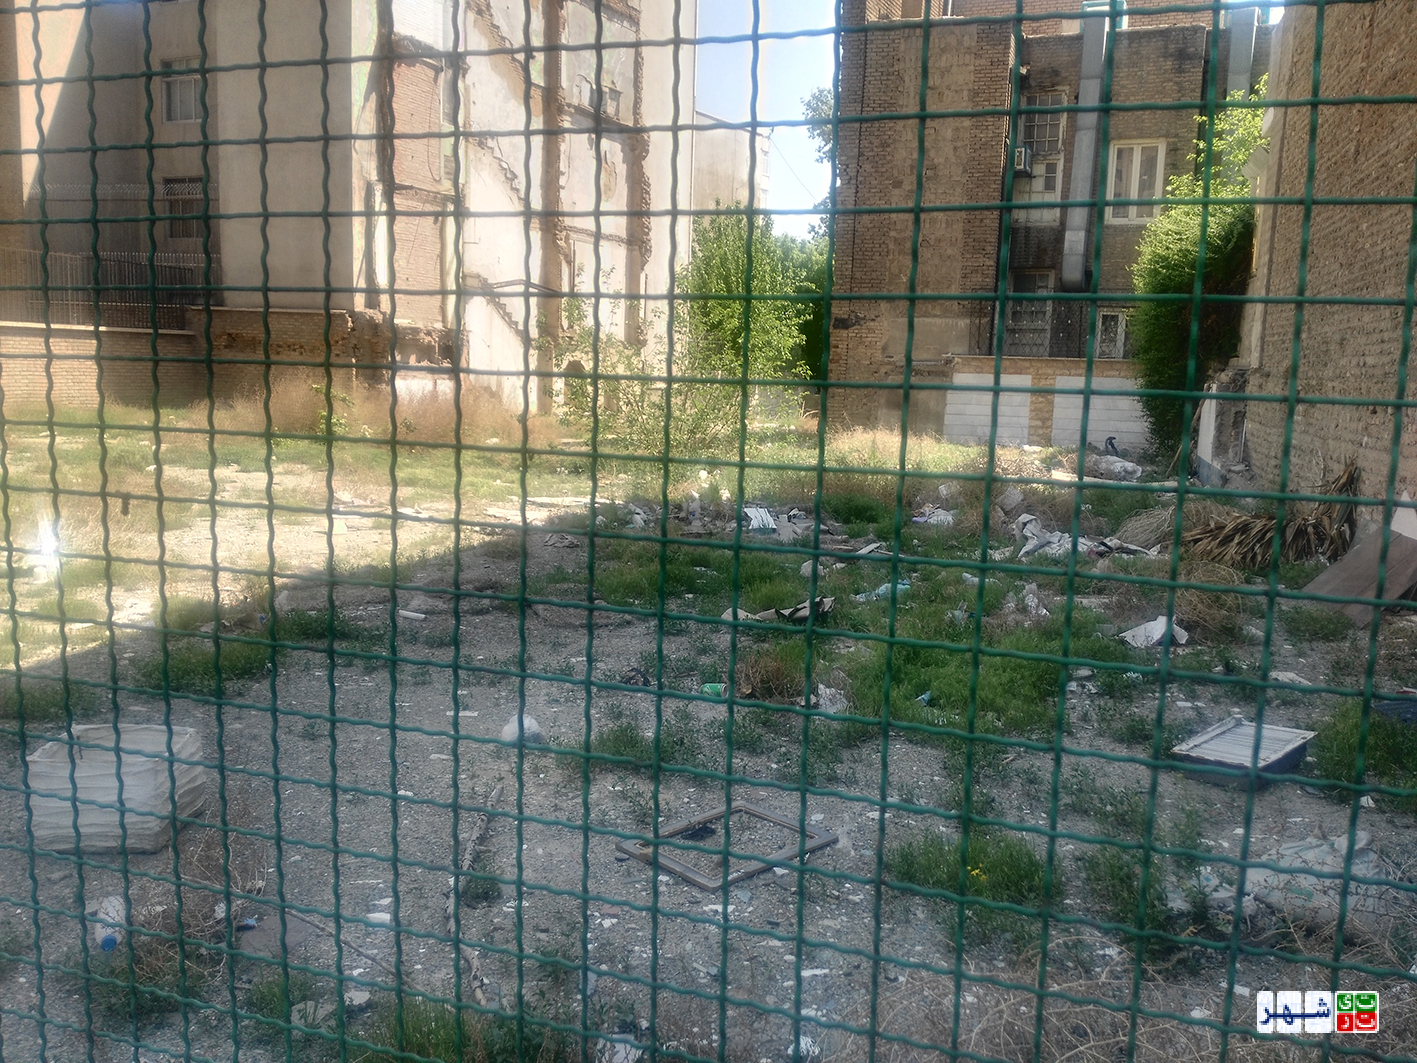 کاهش کیفیت زندگی در محله های منطقه 6 به دلیل اجرای طرح توسعه پردیس دانشگاه تهران / شهر دانش این روزها بلای ساکنان محله وصال شده است